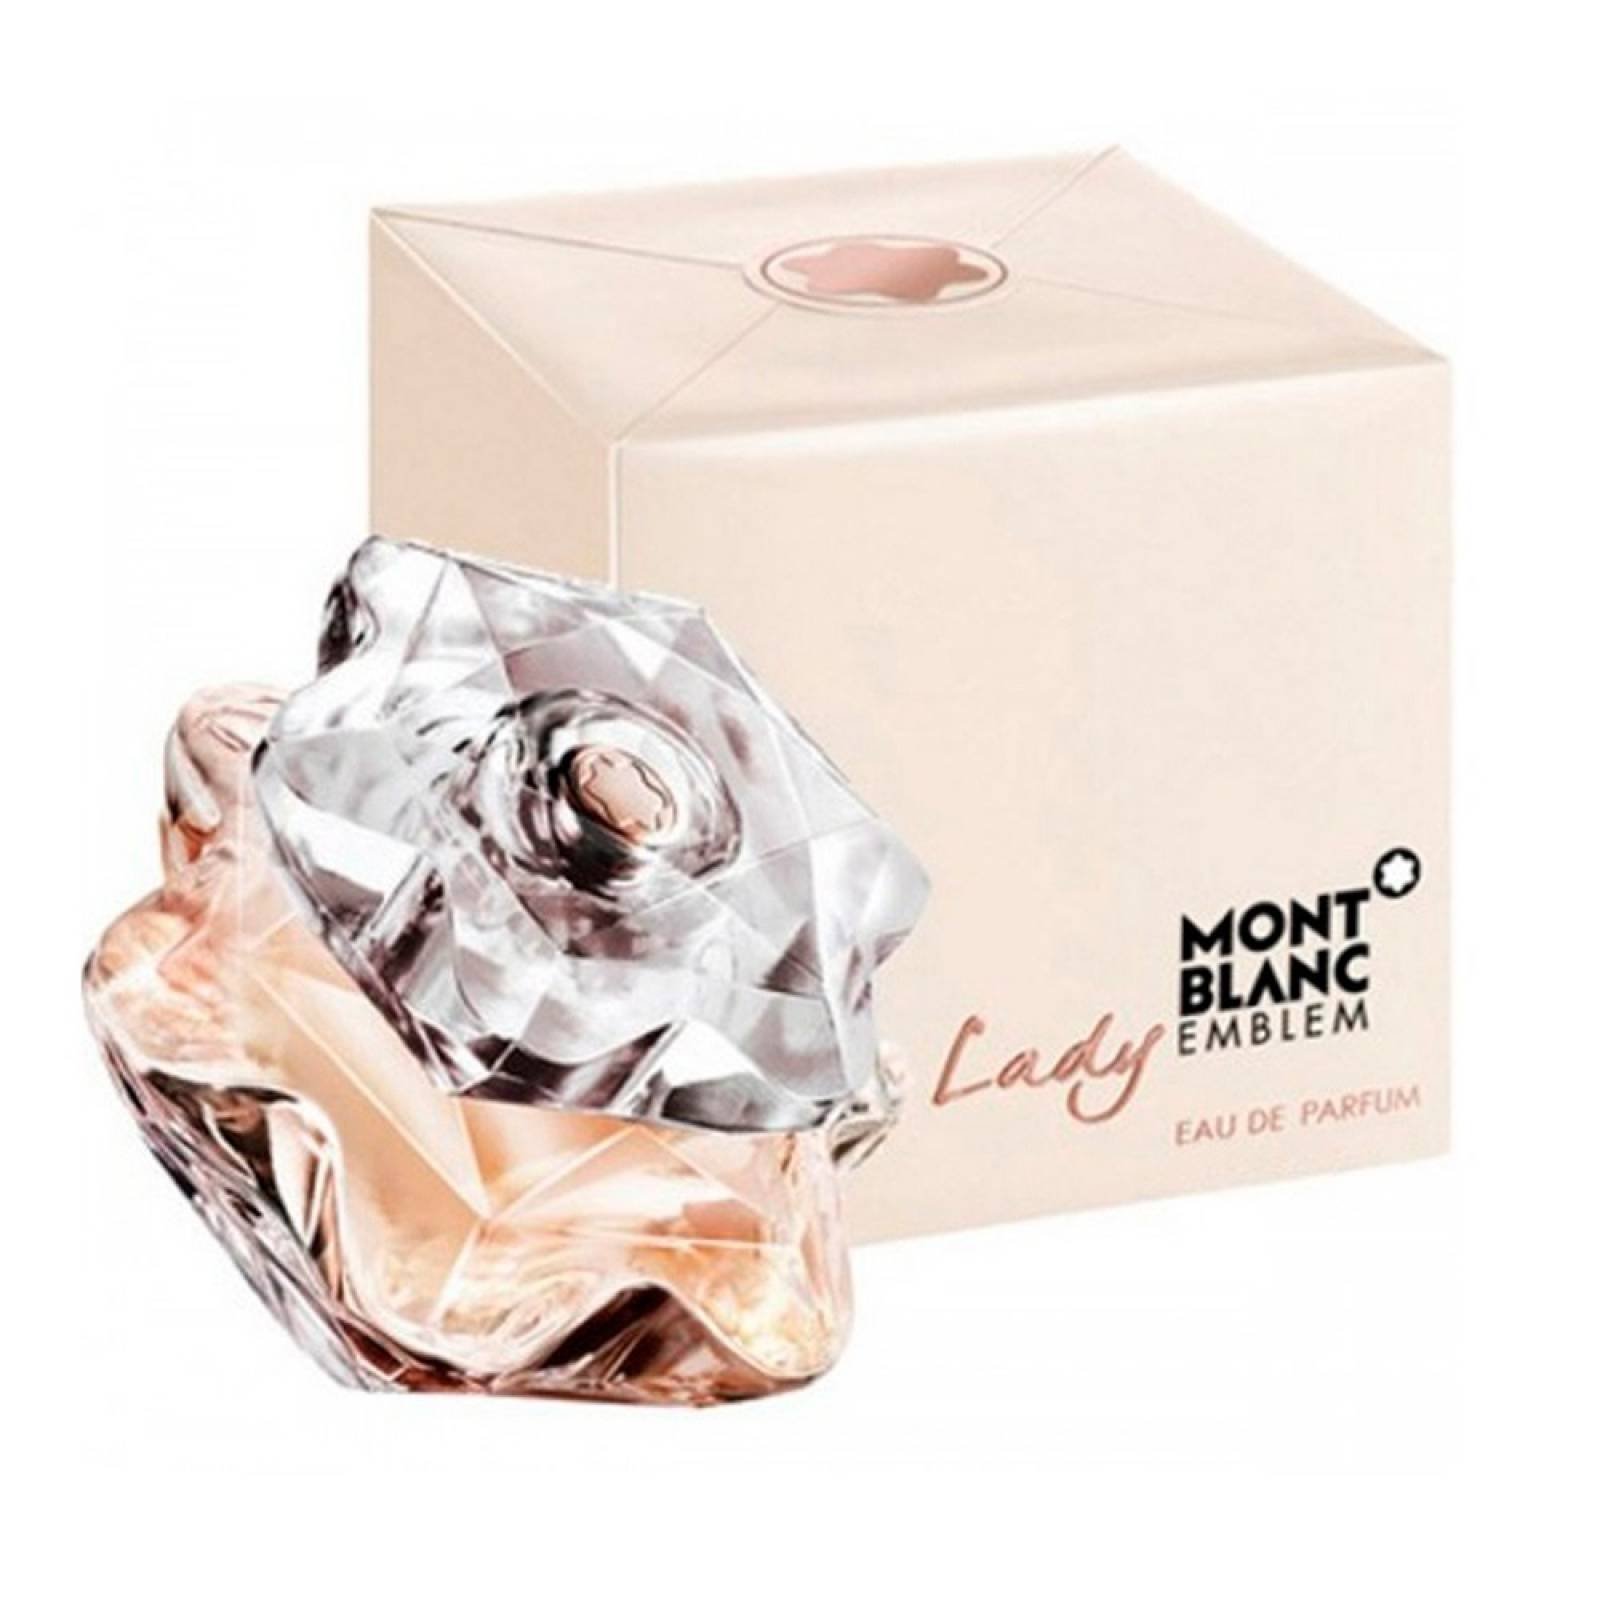 Lady Emblem De Mont Blanc Eau de Parfum 75 ml